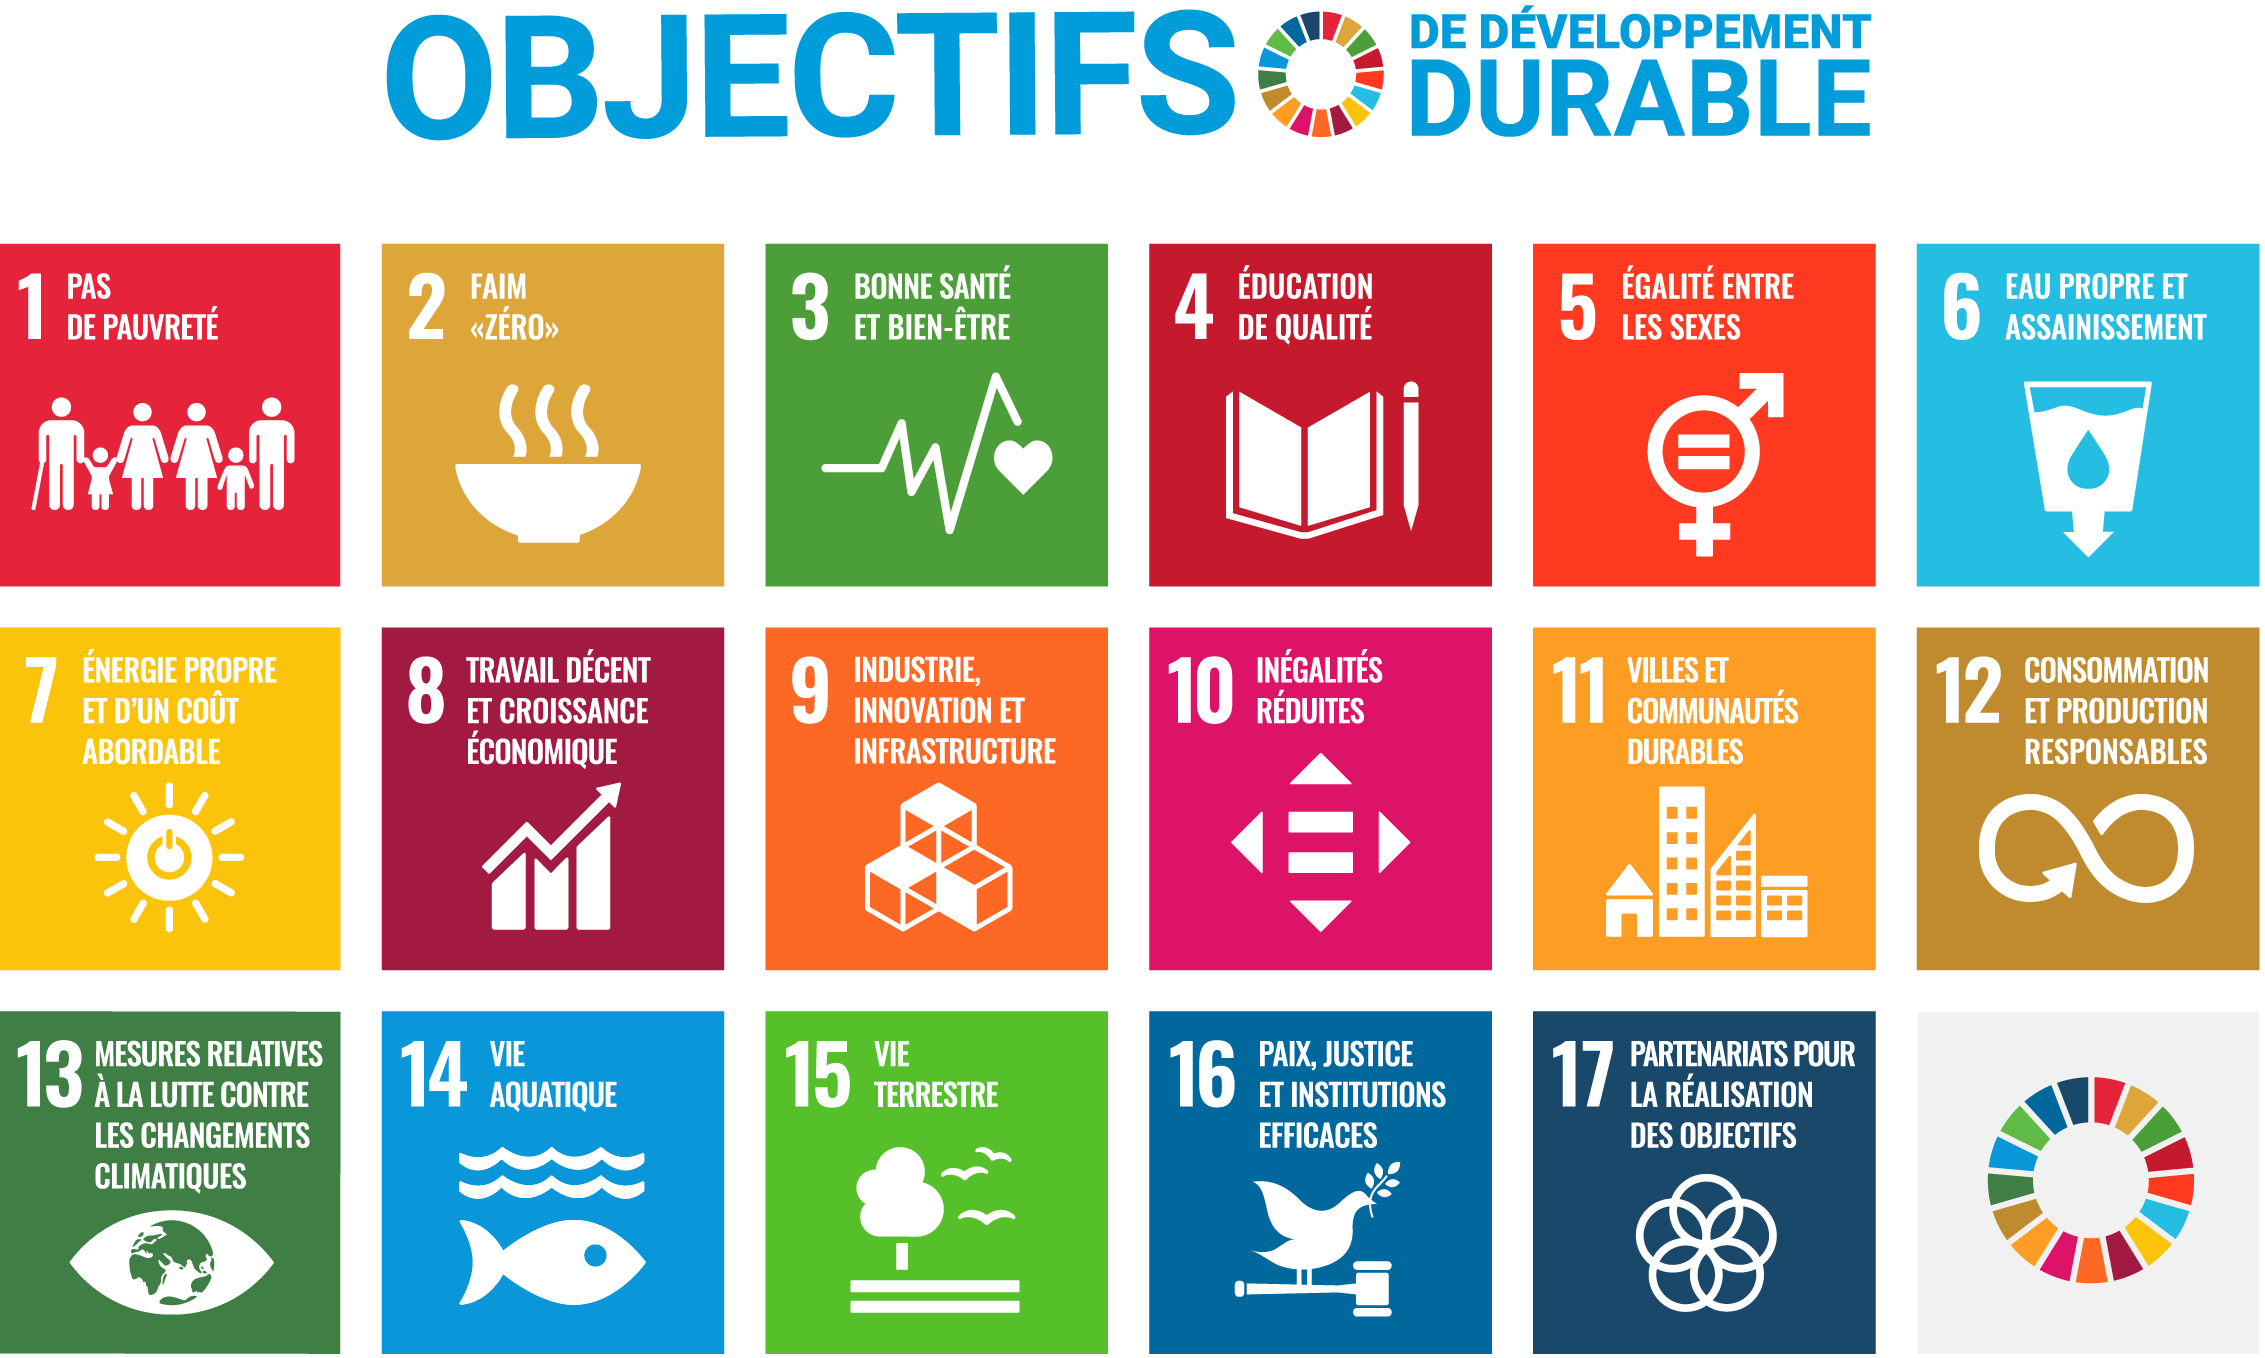 F SDG Poster 2019 without UN emblem WEB v2